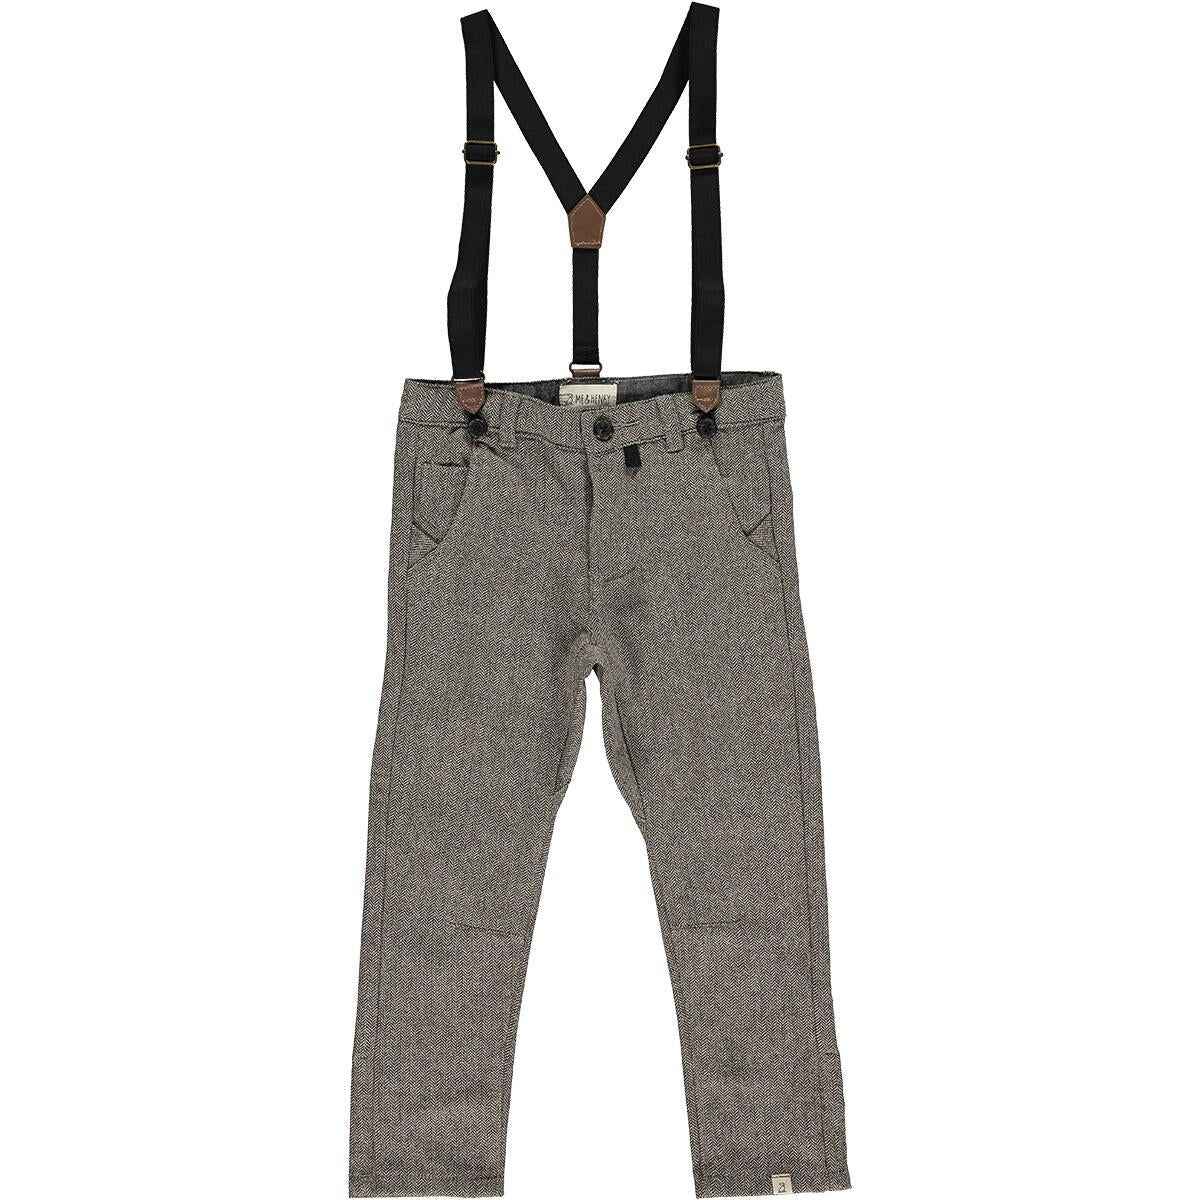 Pants with Suspenders- Brown Herringbone